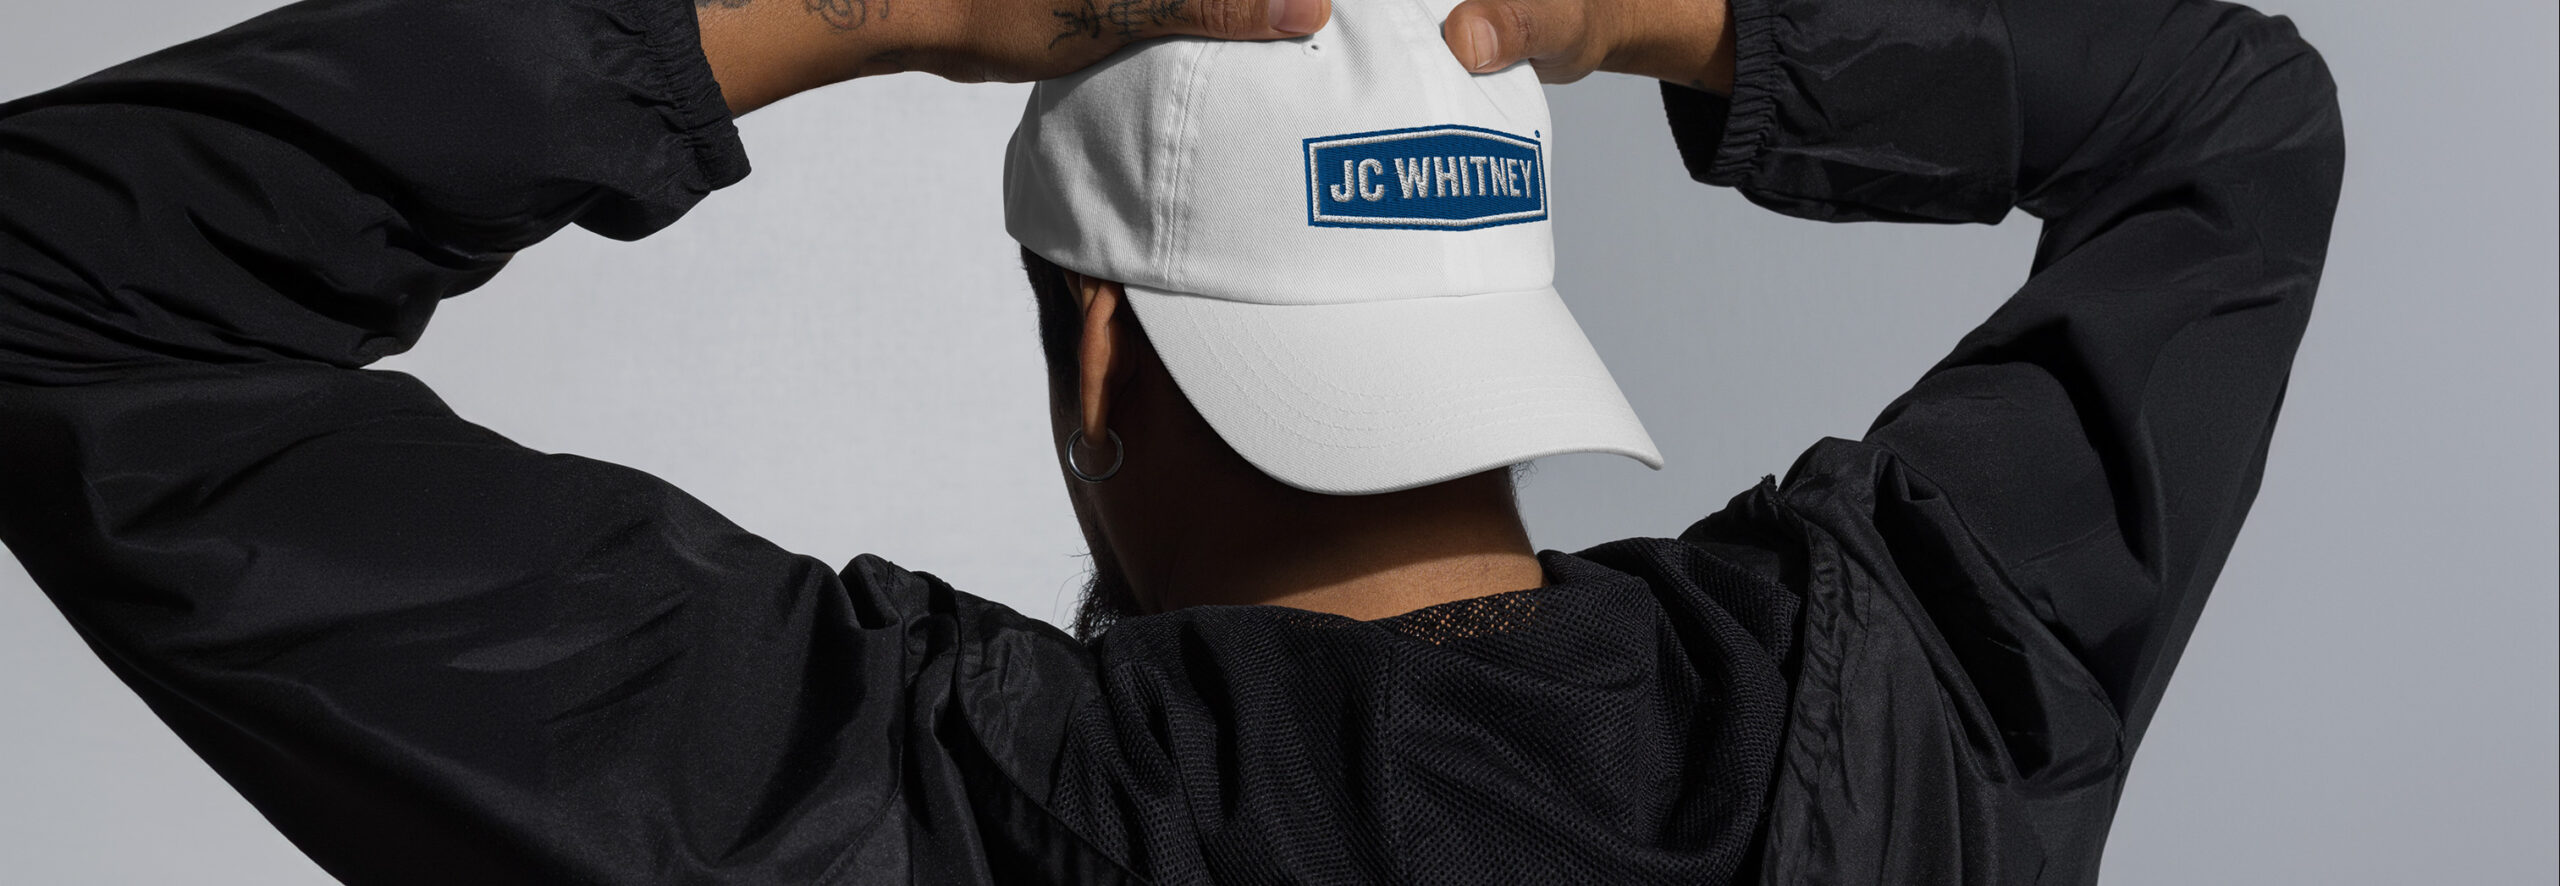 Man wearing JC Whitney hat